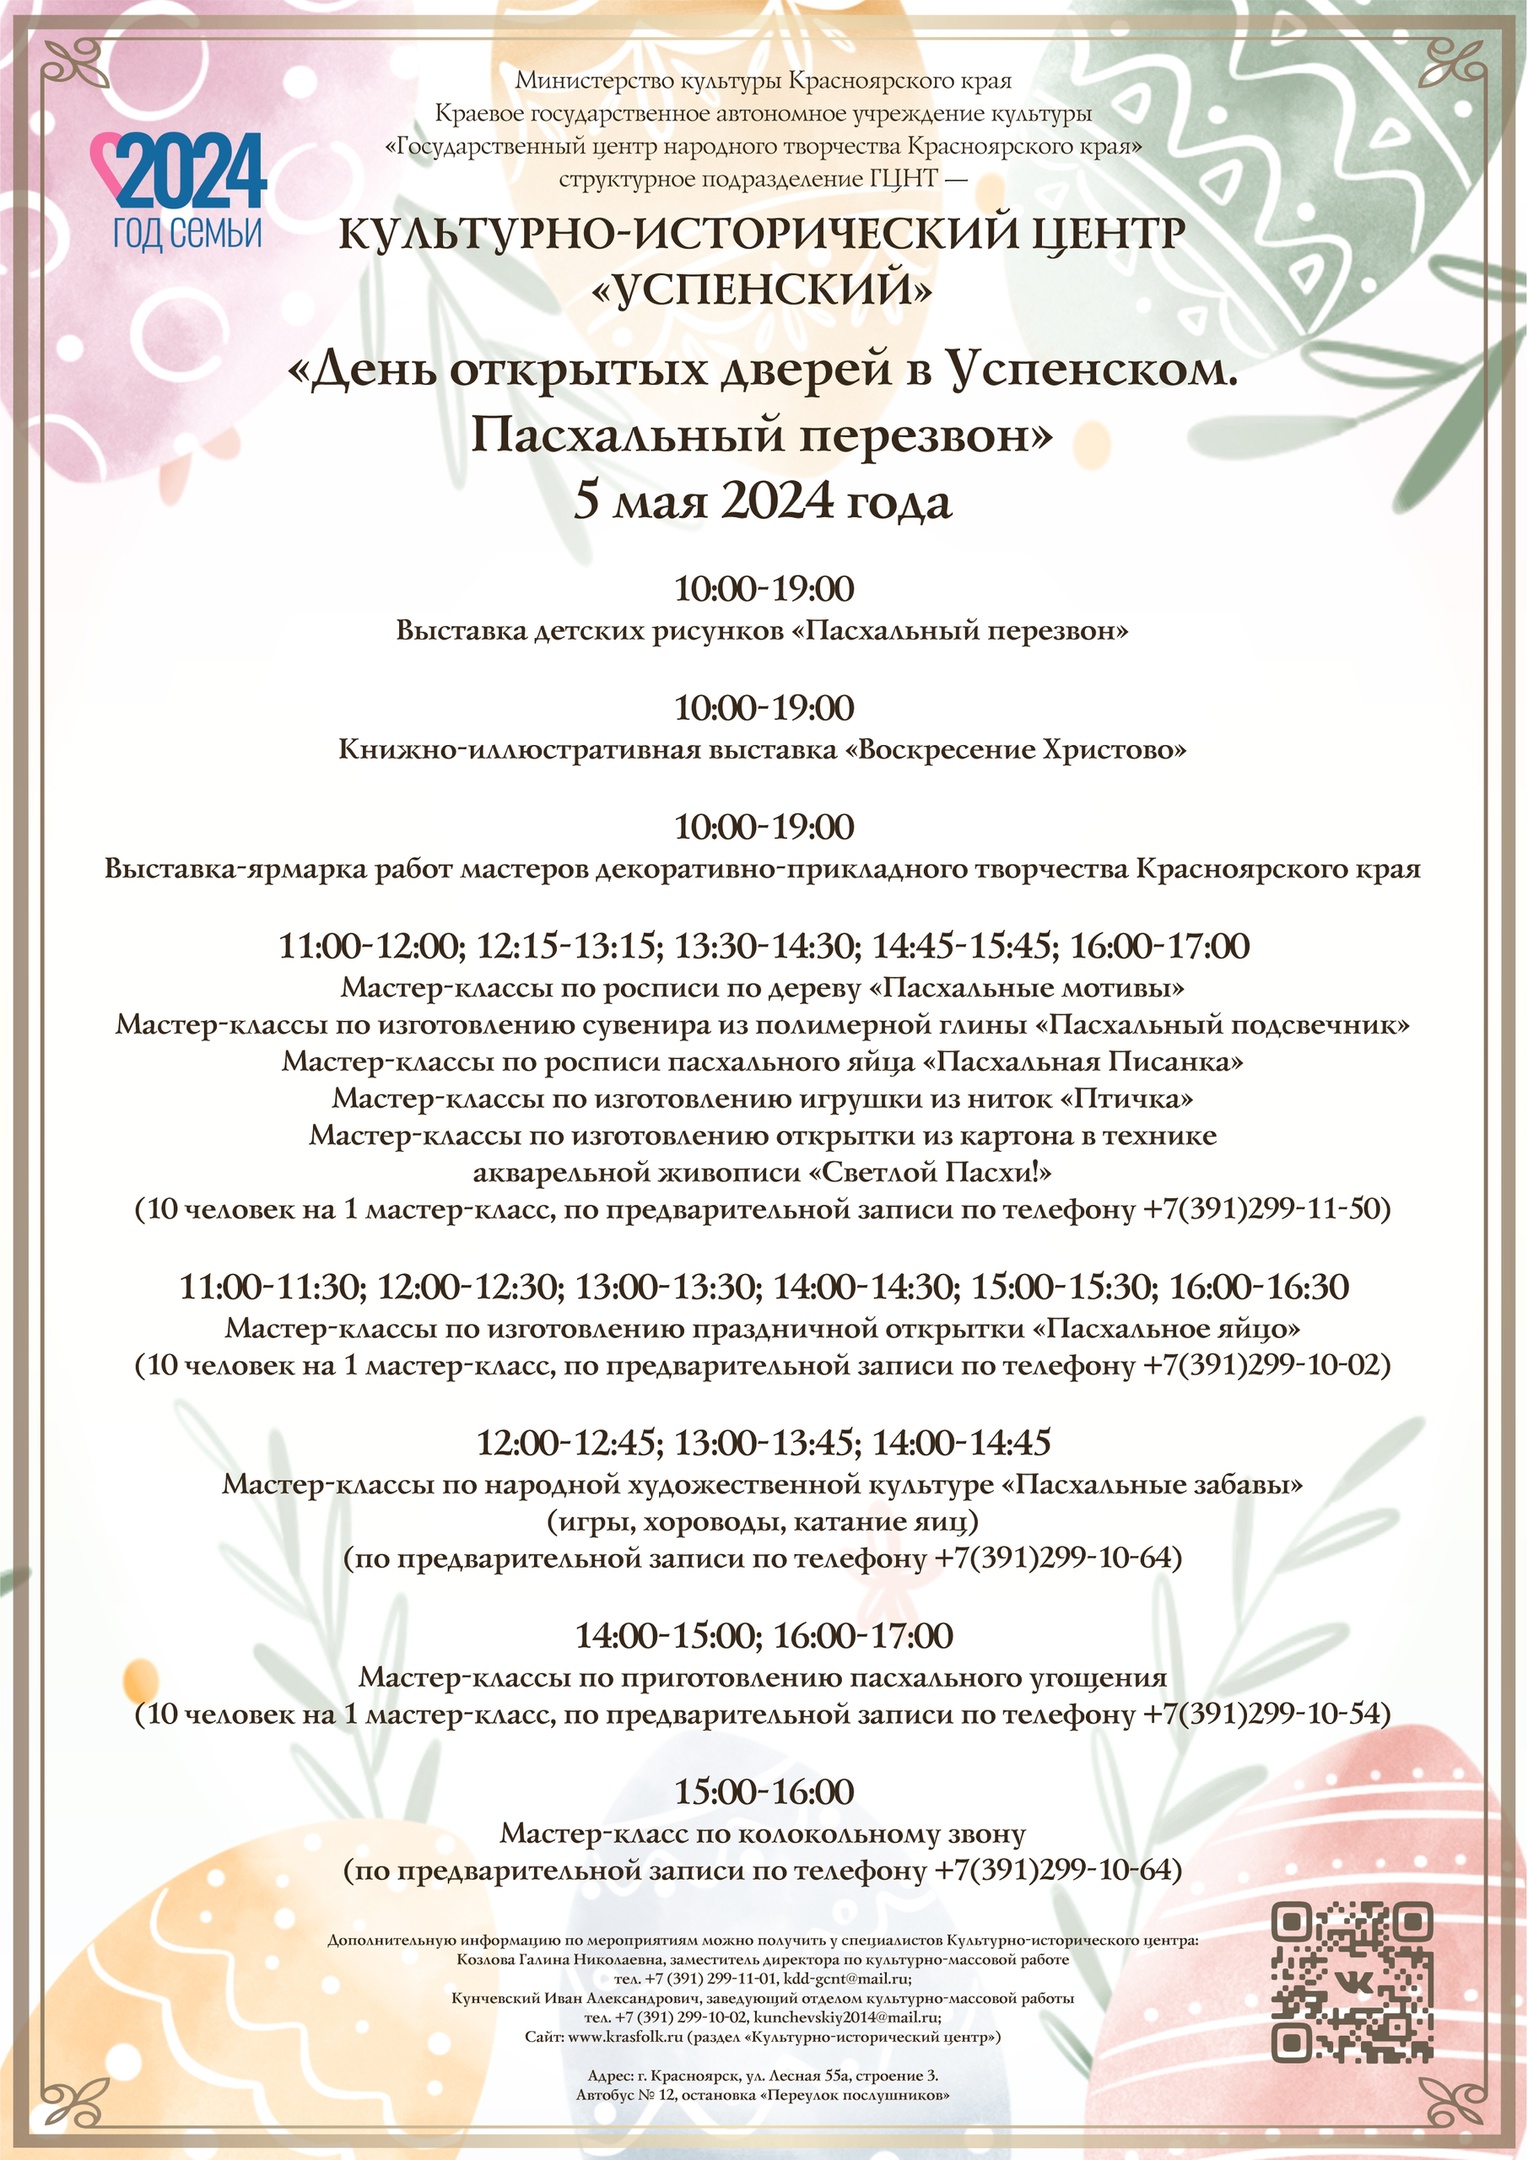 5 мая. День открытых дверей в КИЦ «Успенский» — «Пасхальный перезвон»